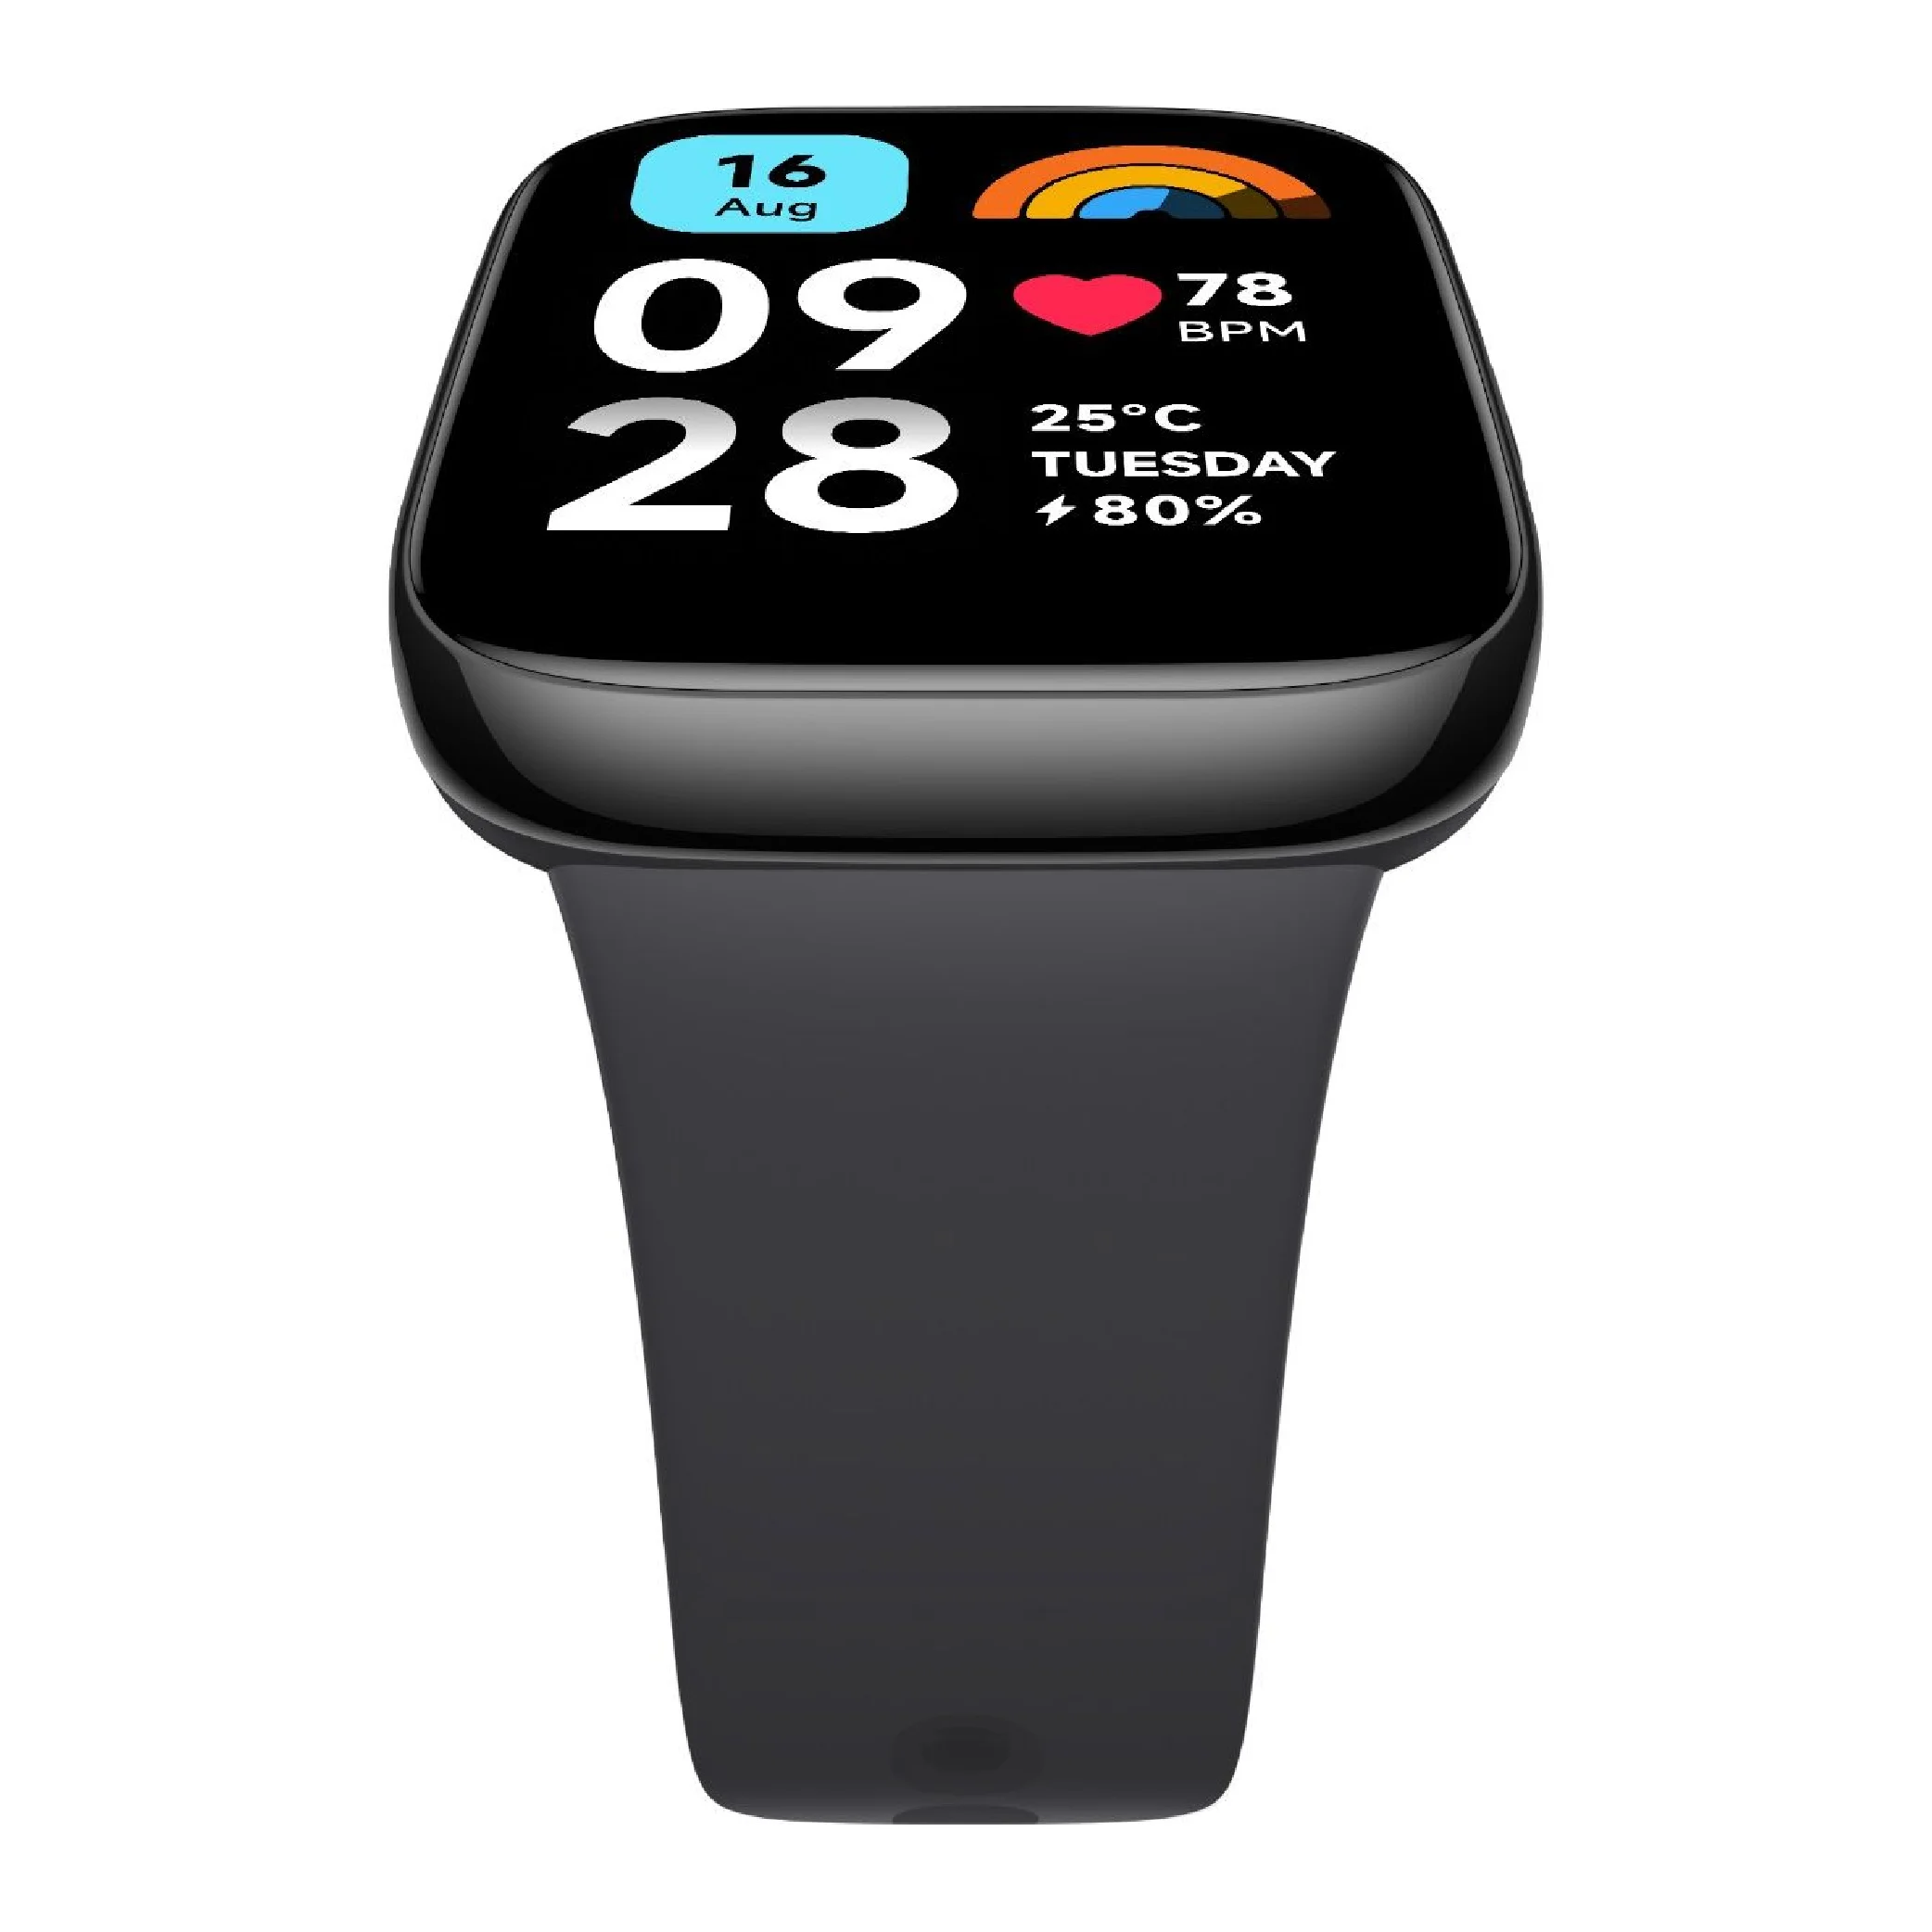 Redmi Watch 3 Active: el reloj inteligente de Xiaomi para atreverte con  todo 